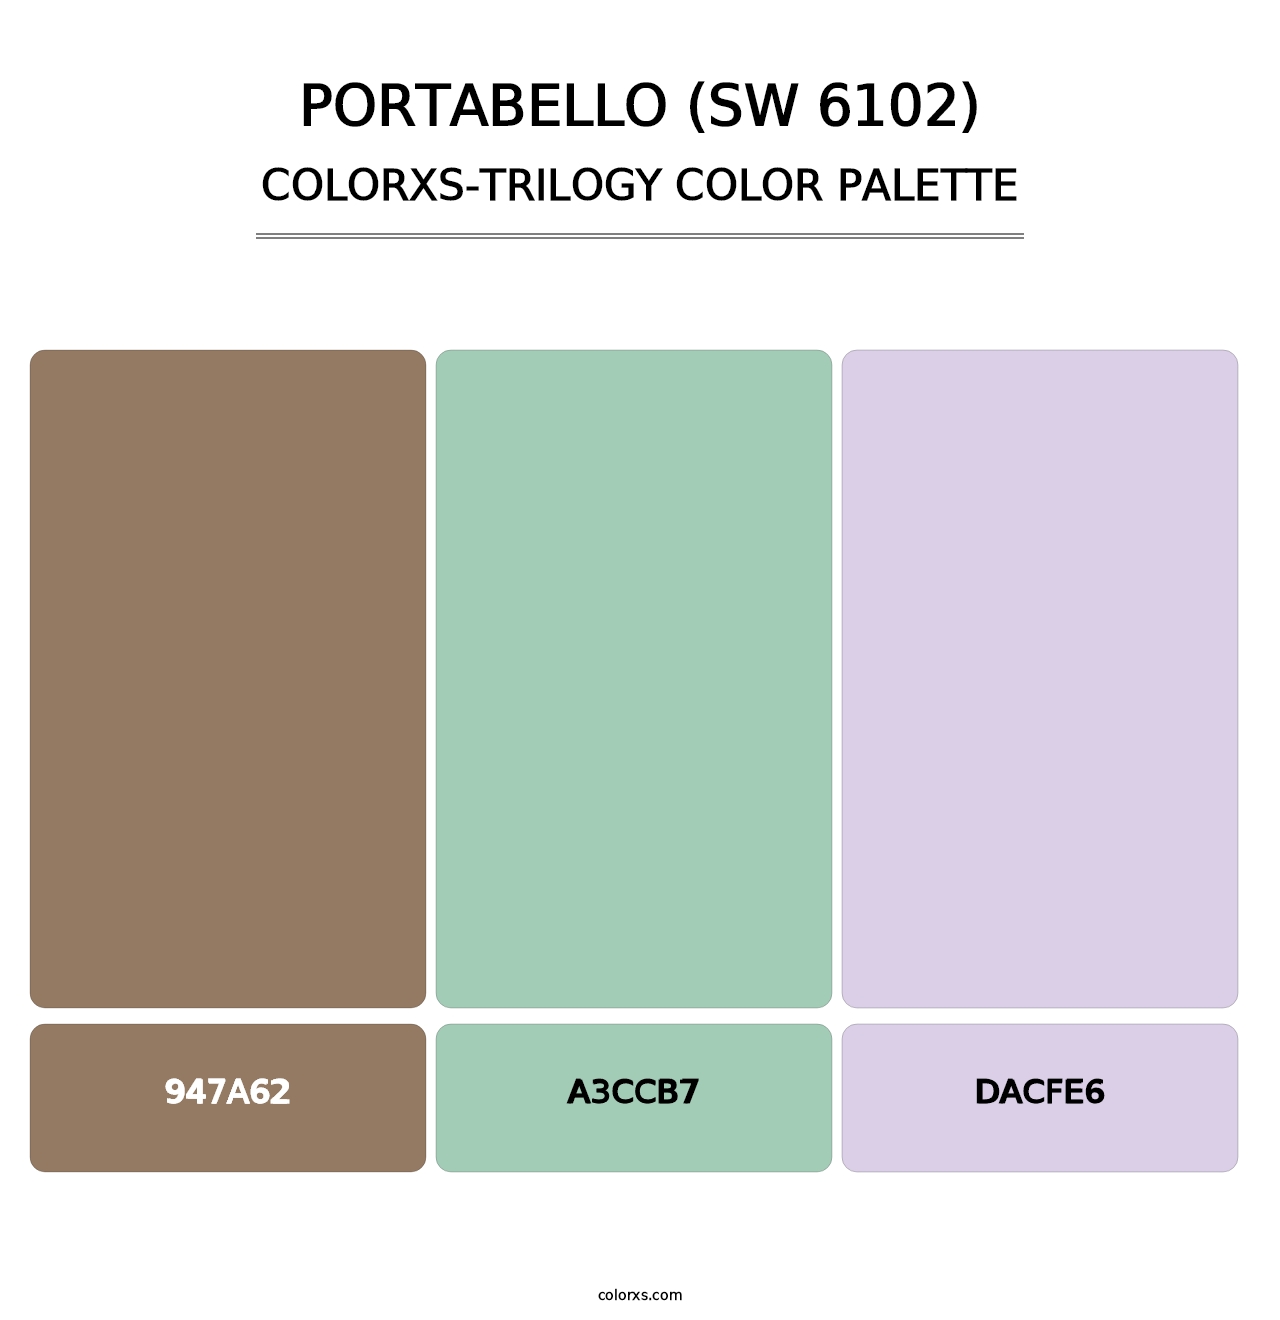 Portabello (SW 6102) - Colorxs Trilogy Palette